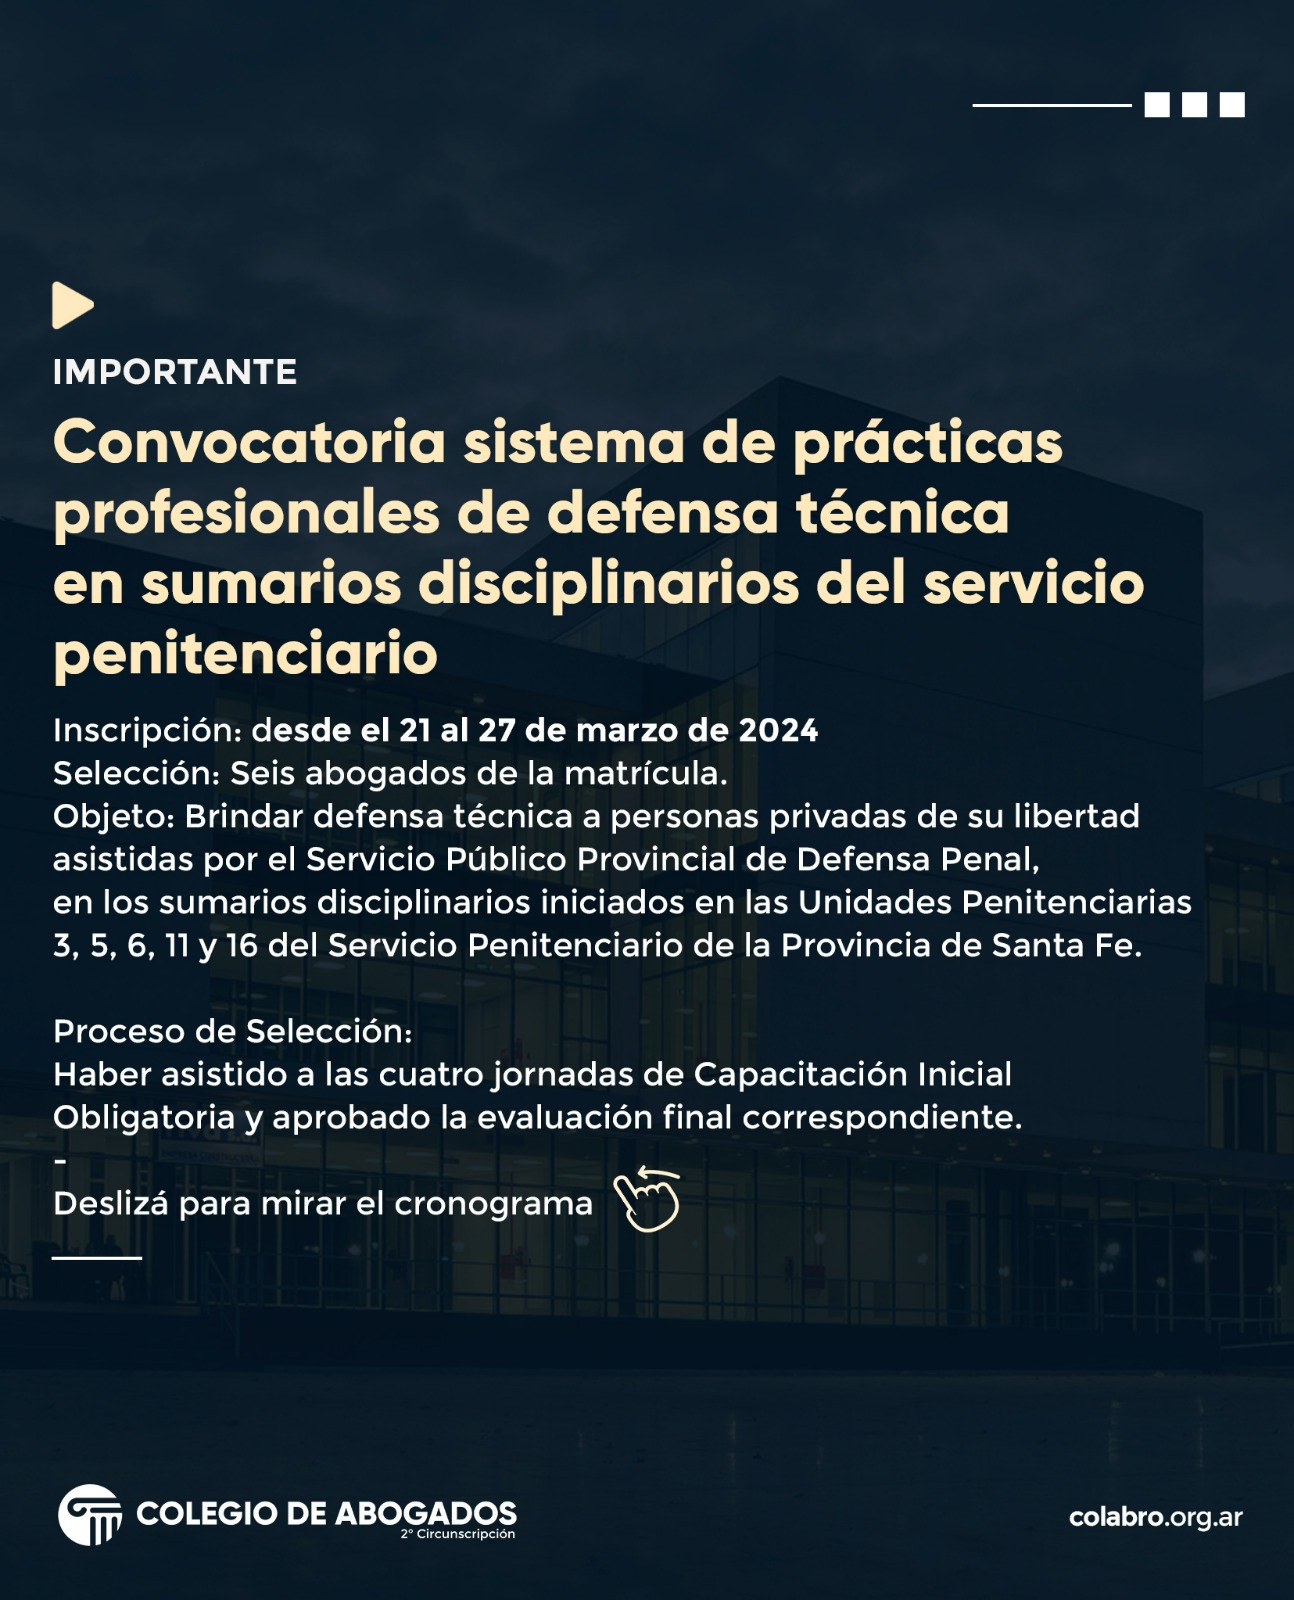 CONVOCATORIA SISTEMA DE PRÁCTICAS PROFESIONALES DE DEFENSA TÉCNICA EN SUMARIOS DISCIPLINARIOS DEL SERVICIO PENITENCIARIO - 2024